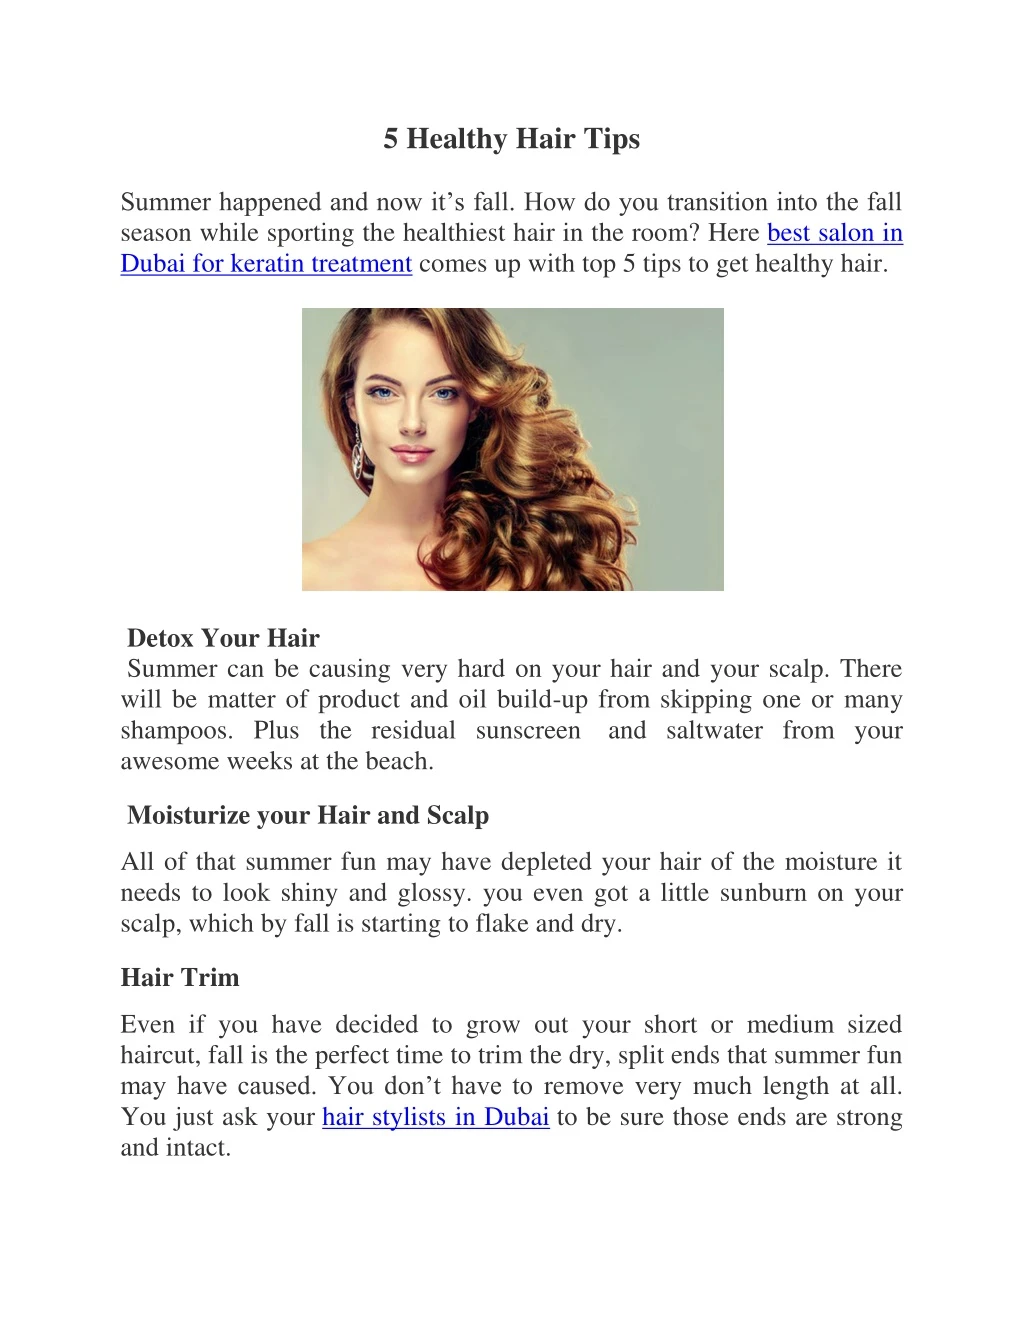 5 healthy hair tips